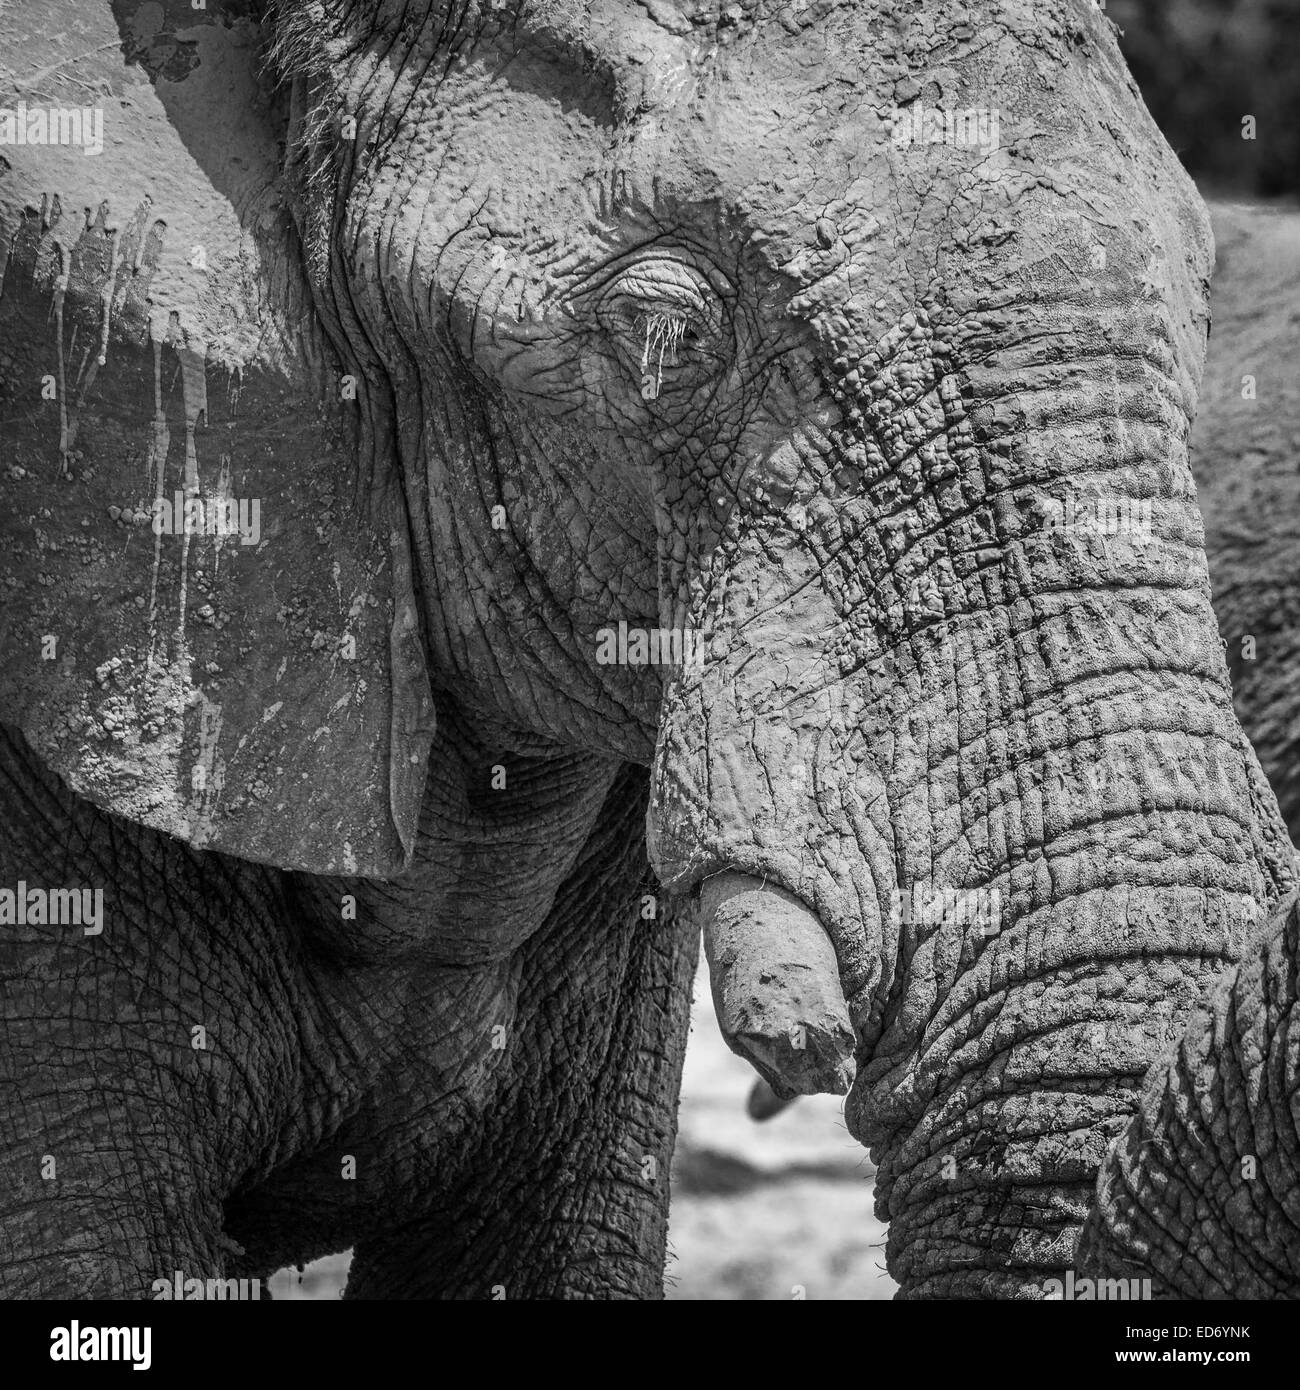 Elefante africano (Loxodonta africana) con un colmillo roto, cubierto de barro, Ghoha Hills, el Parque Nacional Chobe, Botswana Foto de stock